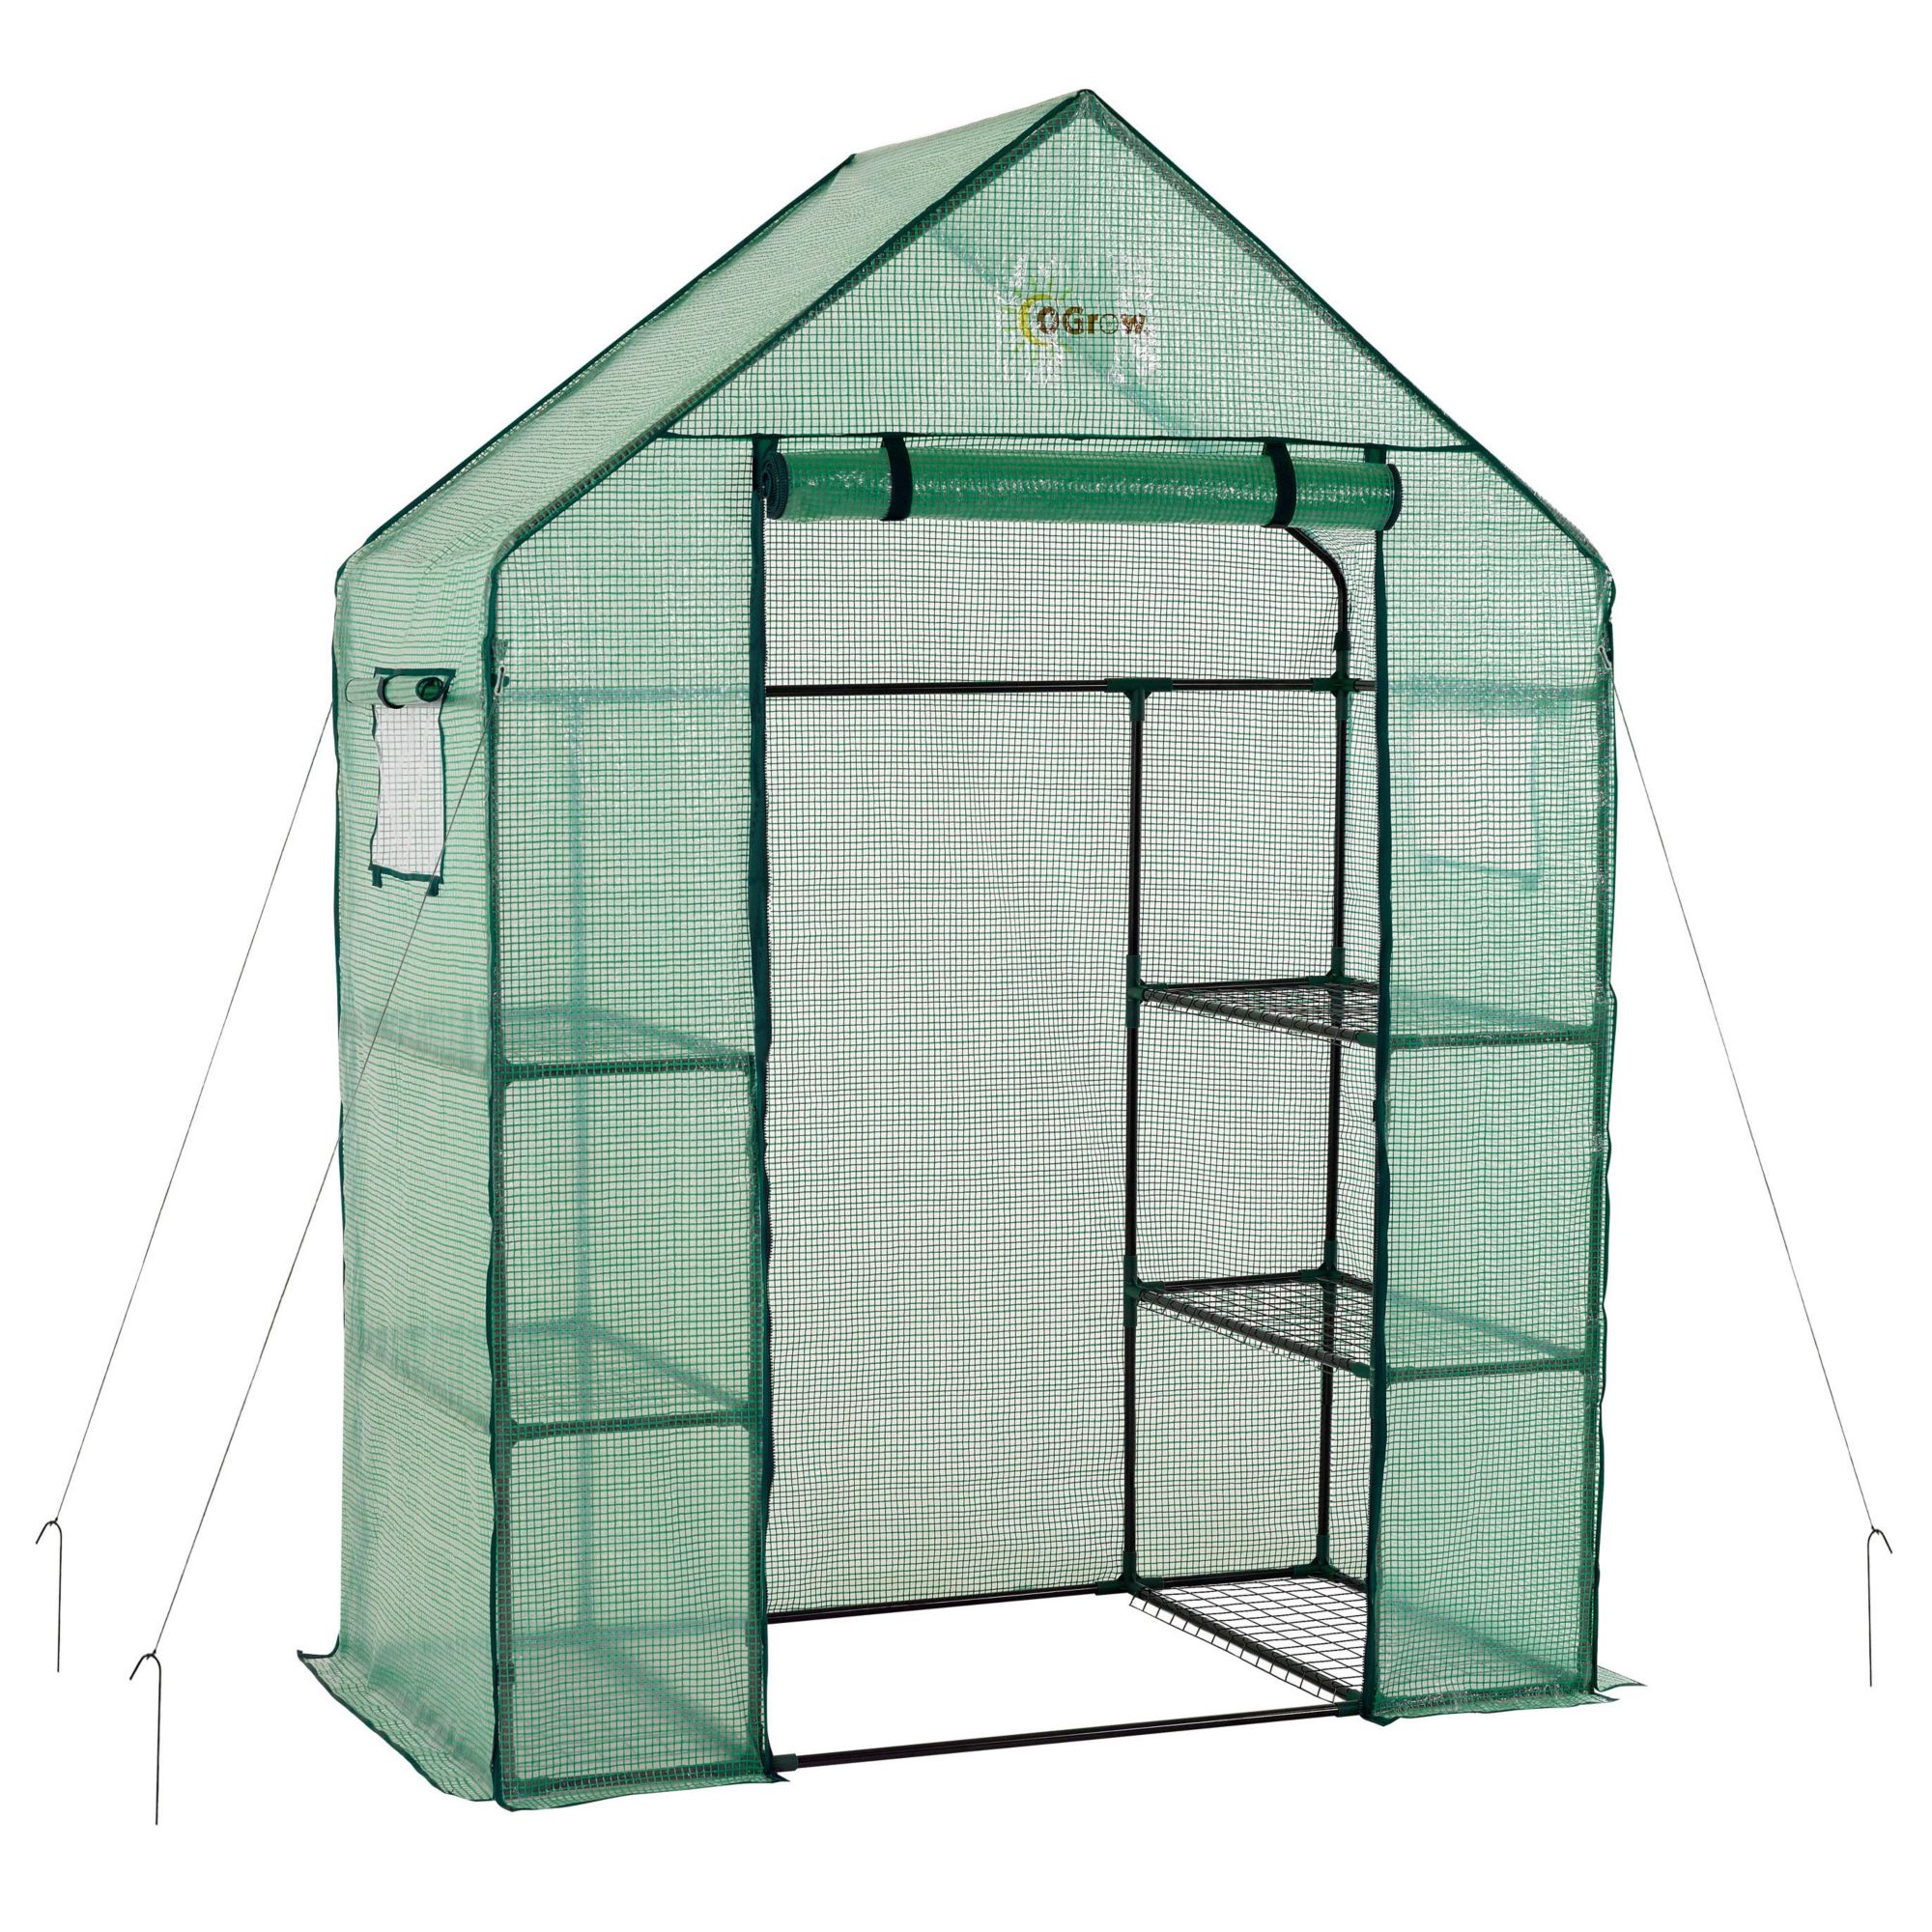 Ogrow Deluxe Walk-in 3-Tier 6-Shelf Portable Greenhouse